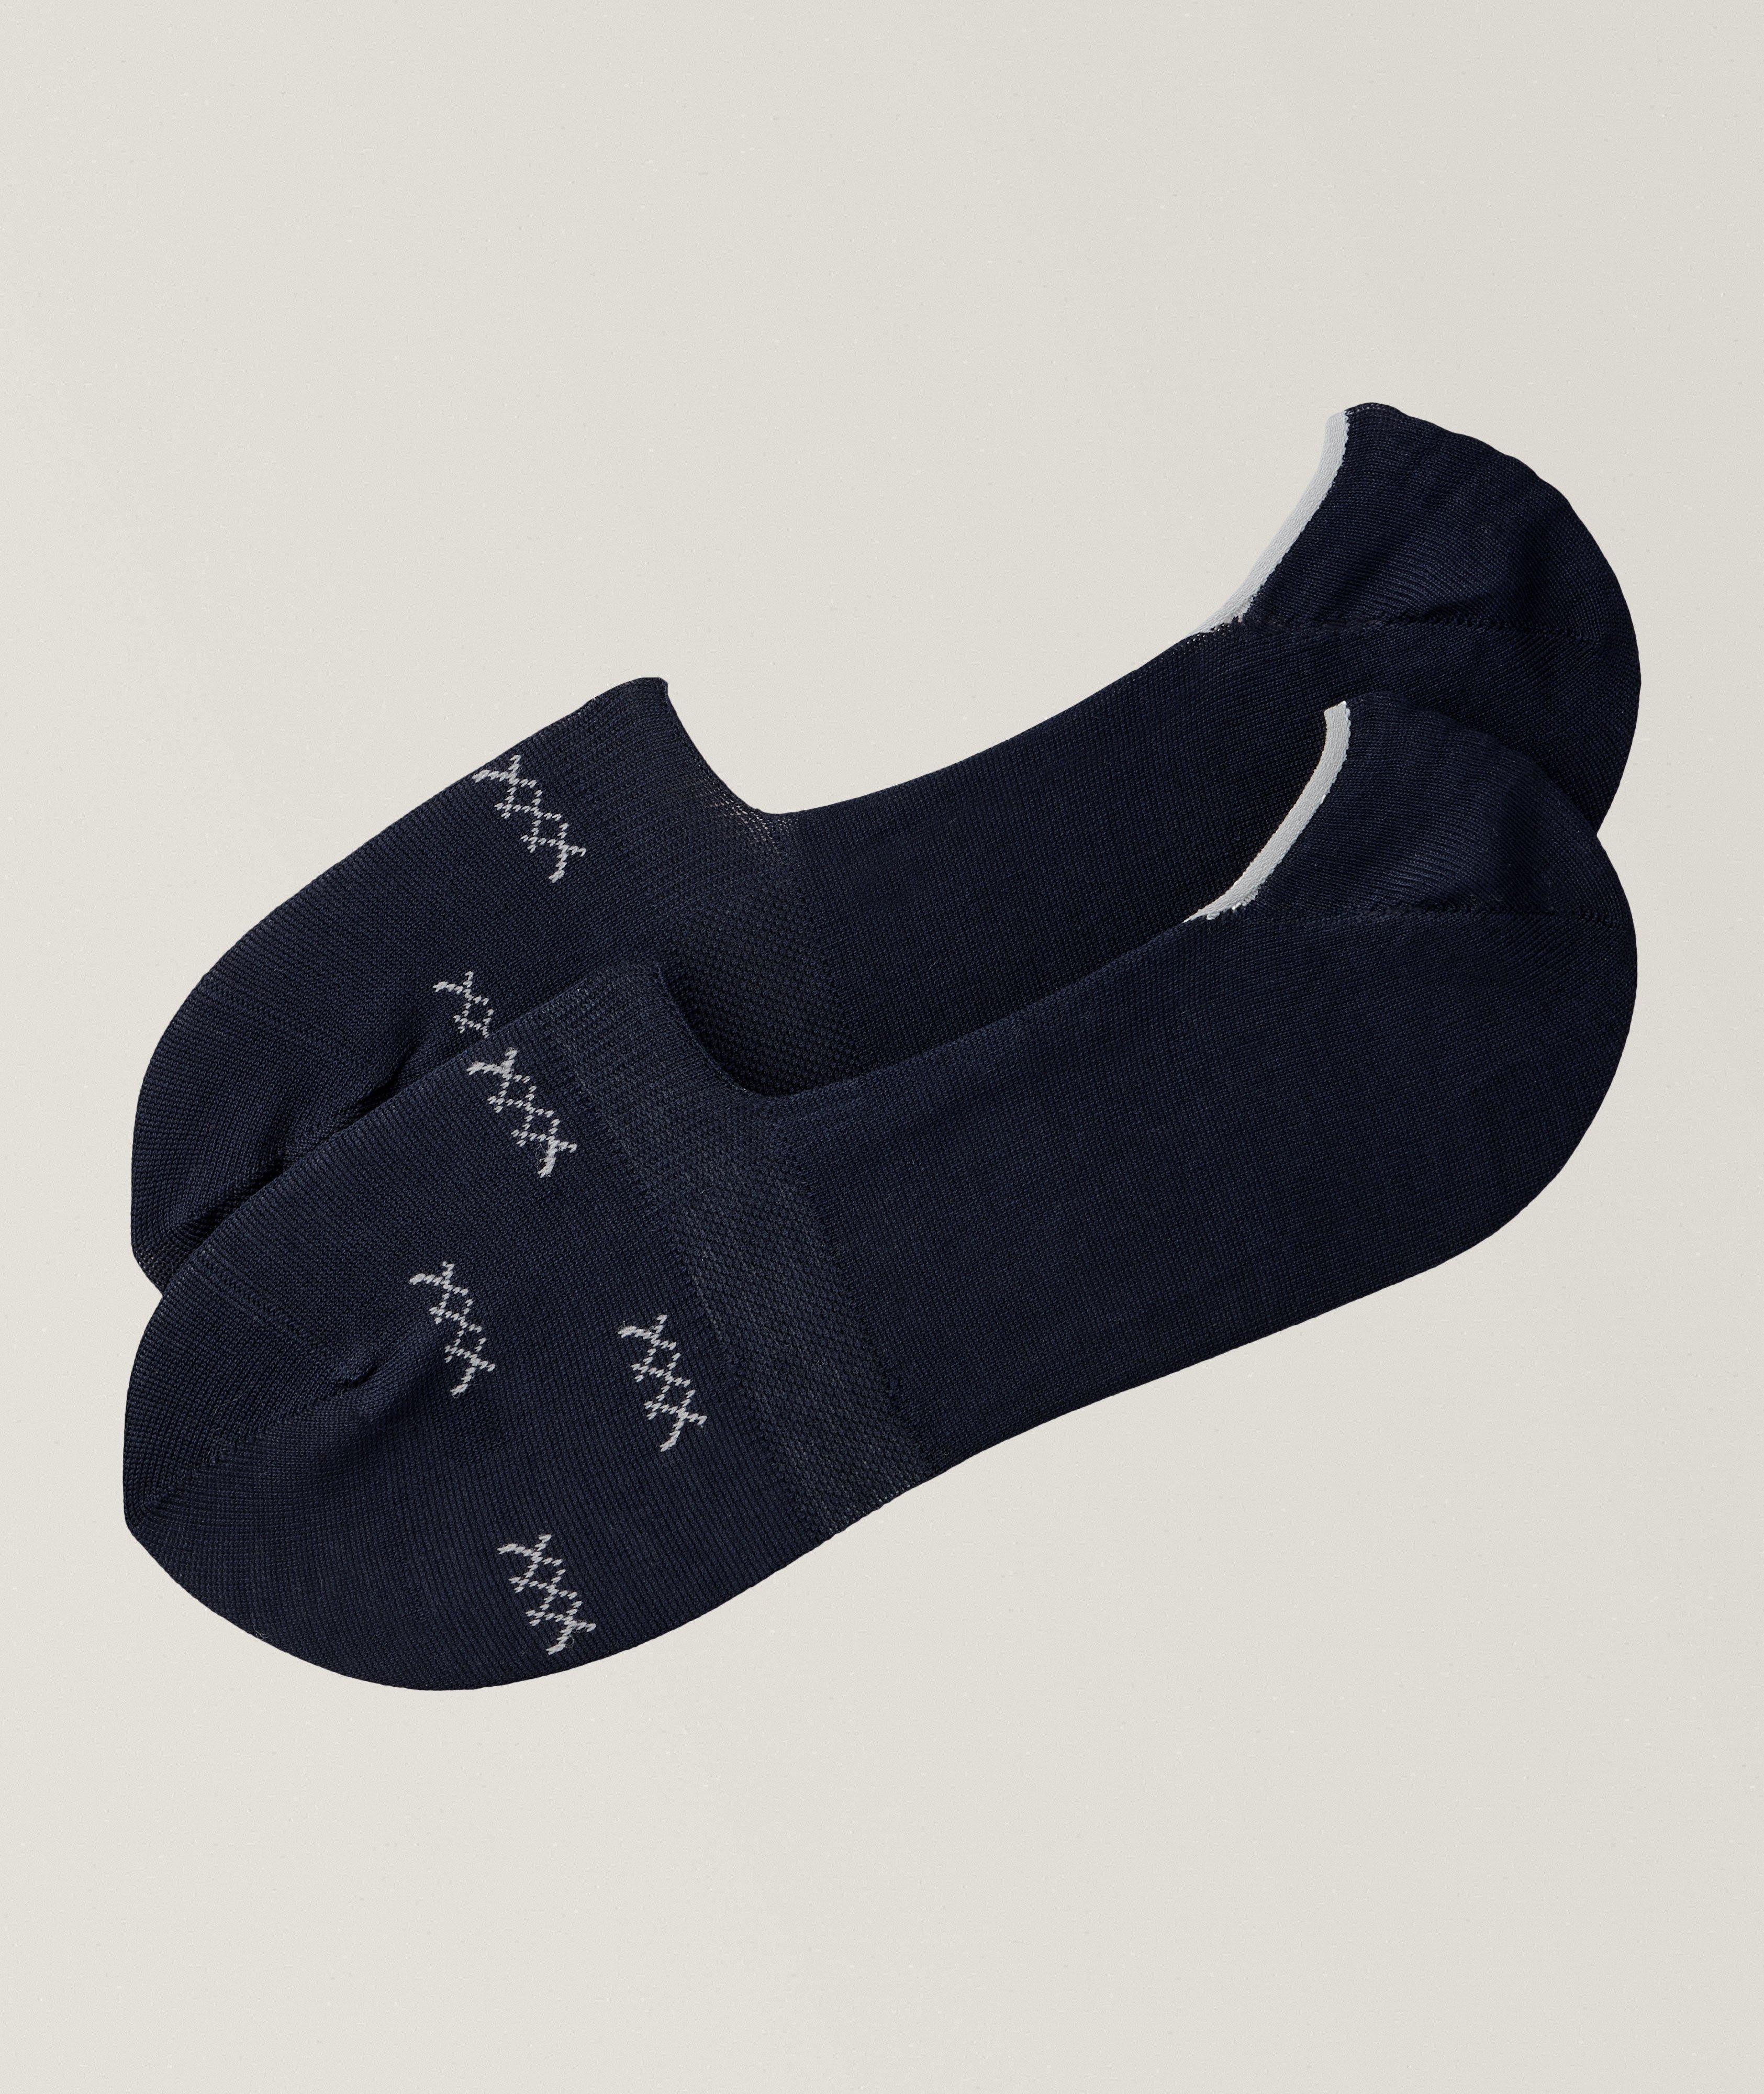 Zegna Triple X Mercerized Stretch-Cotton No-Show Sock